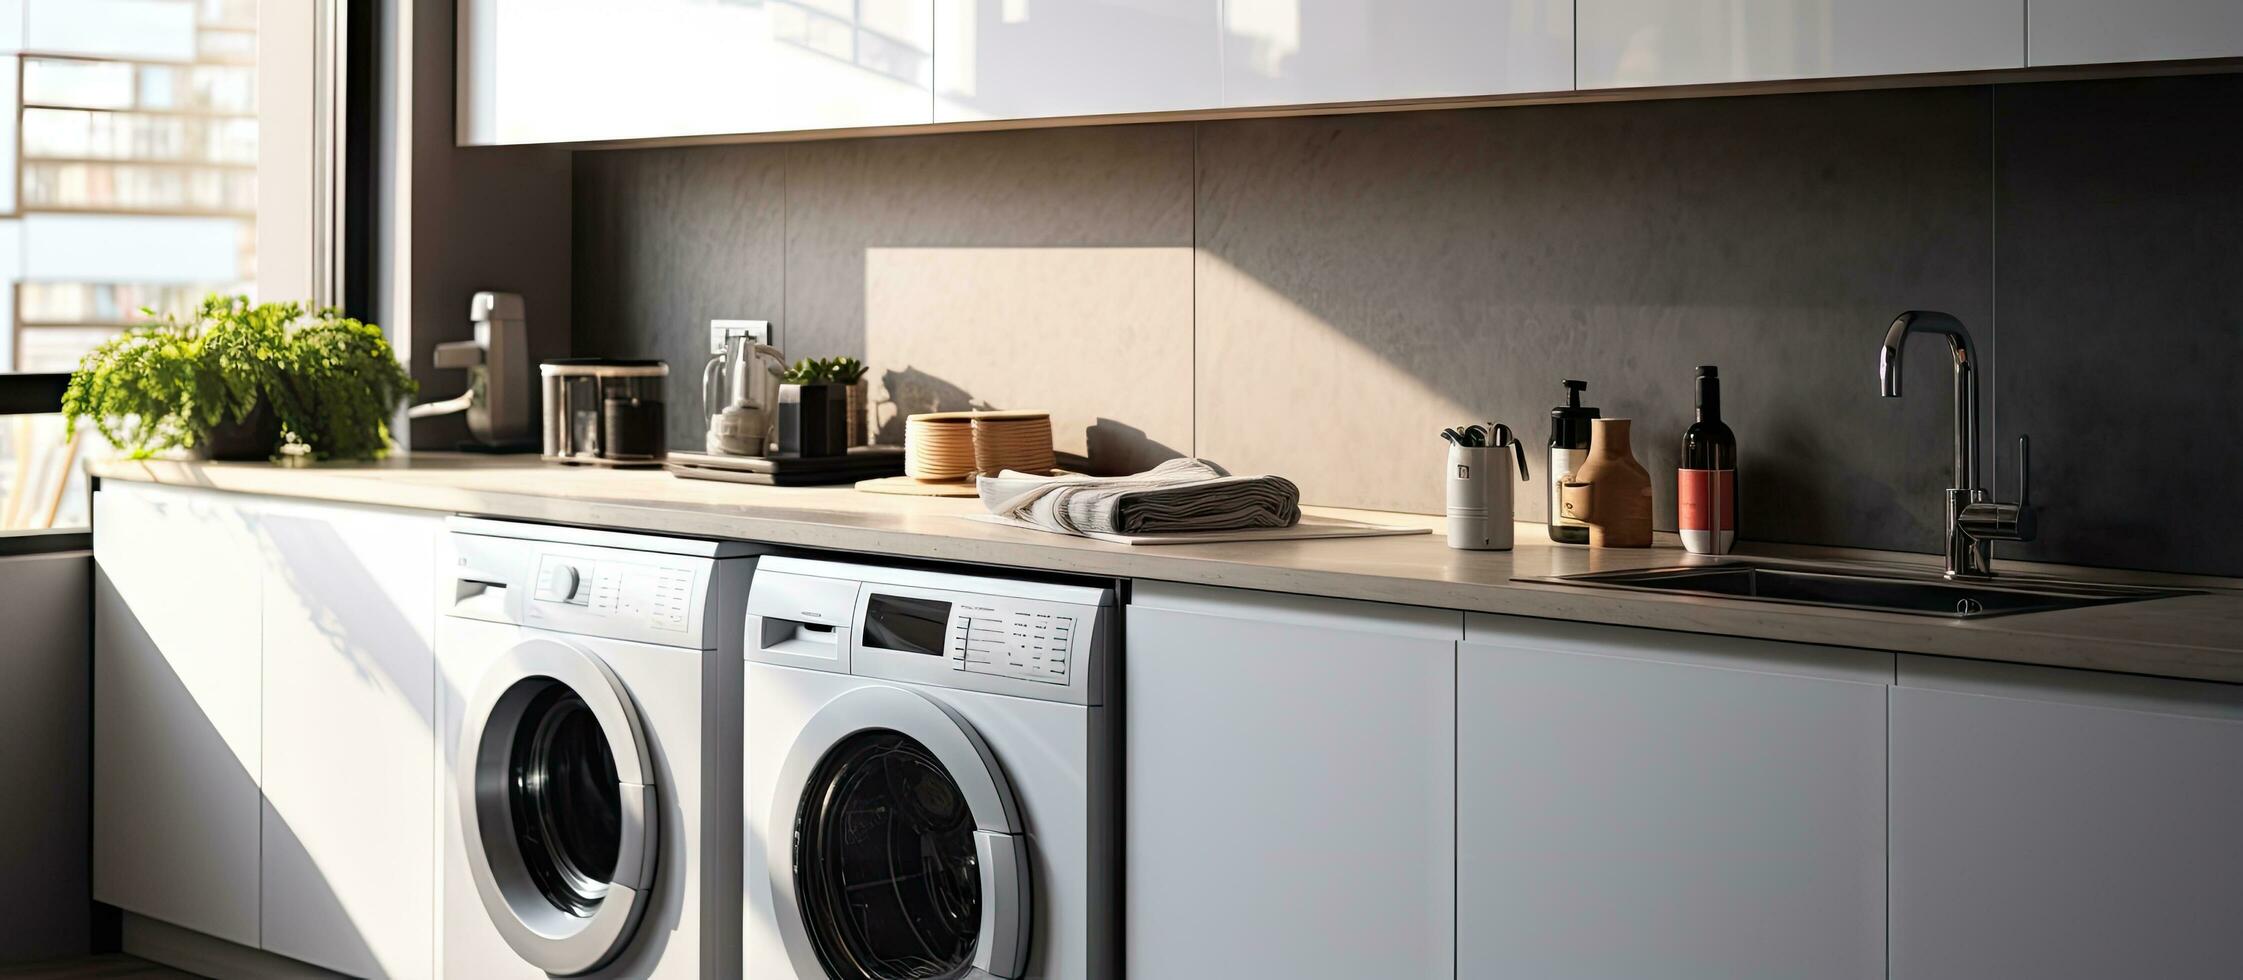 modern Öfen Arbeitsplatte mit sinken Weiß Schränke stilvoll Küche Sonnenlicht zeitgenössisch Wohnung foto